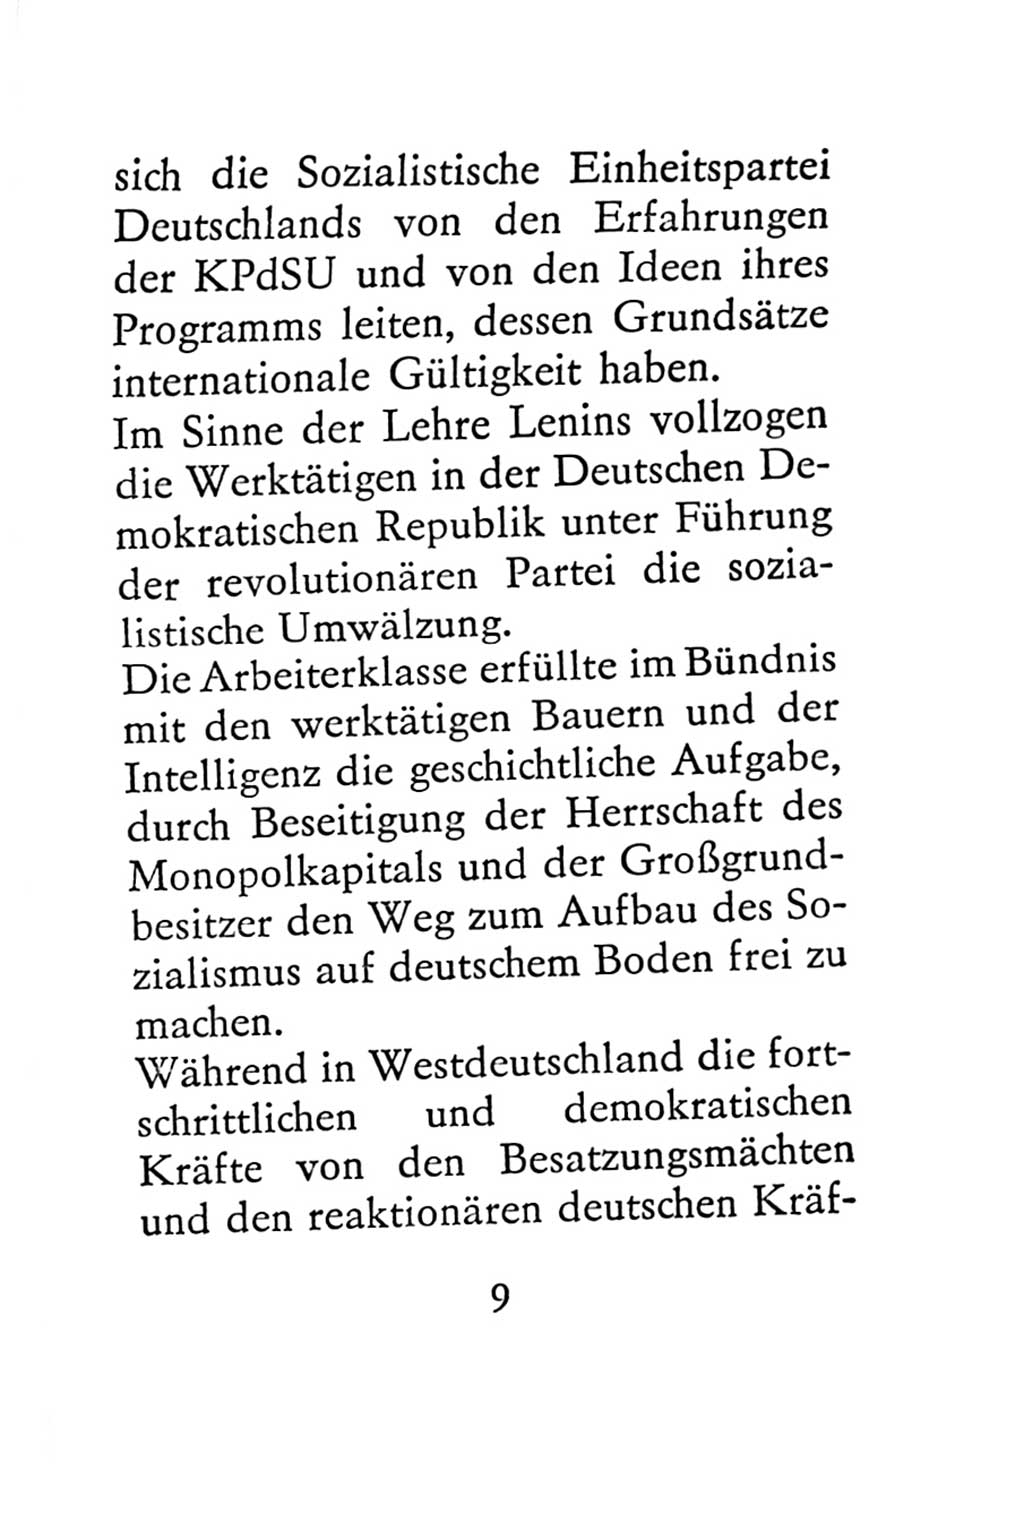 Statut der Sozialistischen Einheitspartei Deutschlands (SED) 1967, Seite 9 (St. SED DDR 1967, S. 9)